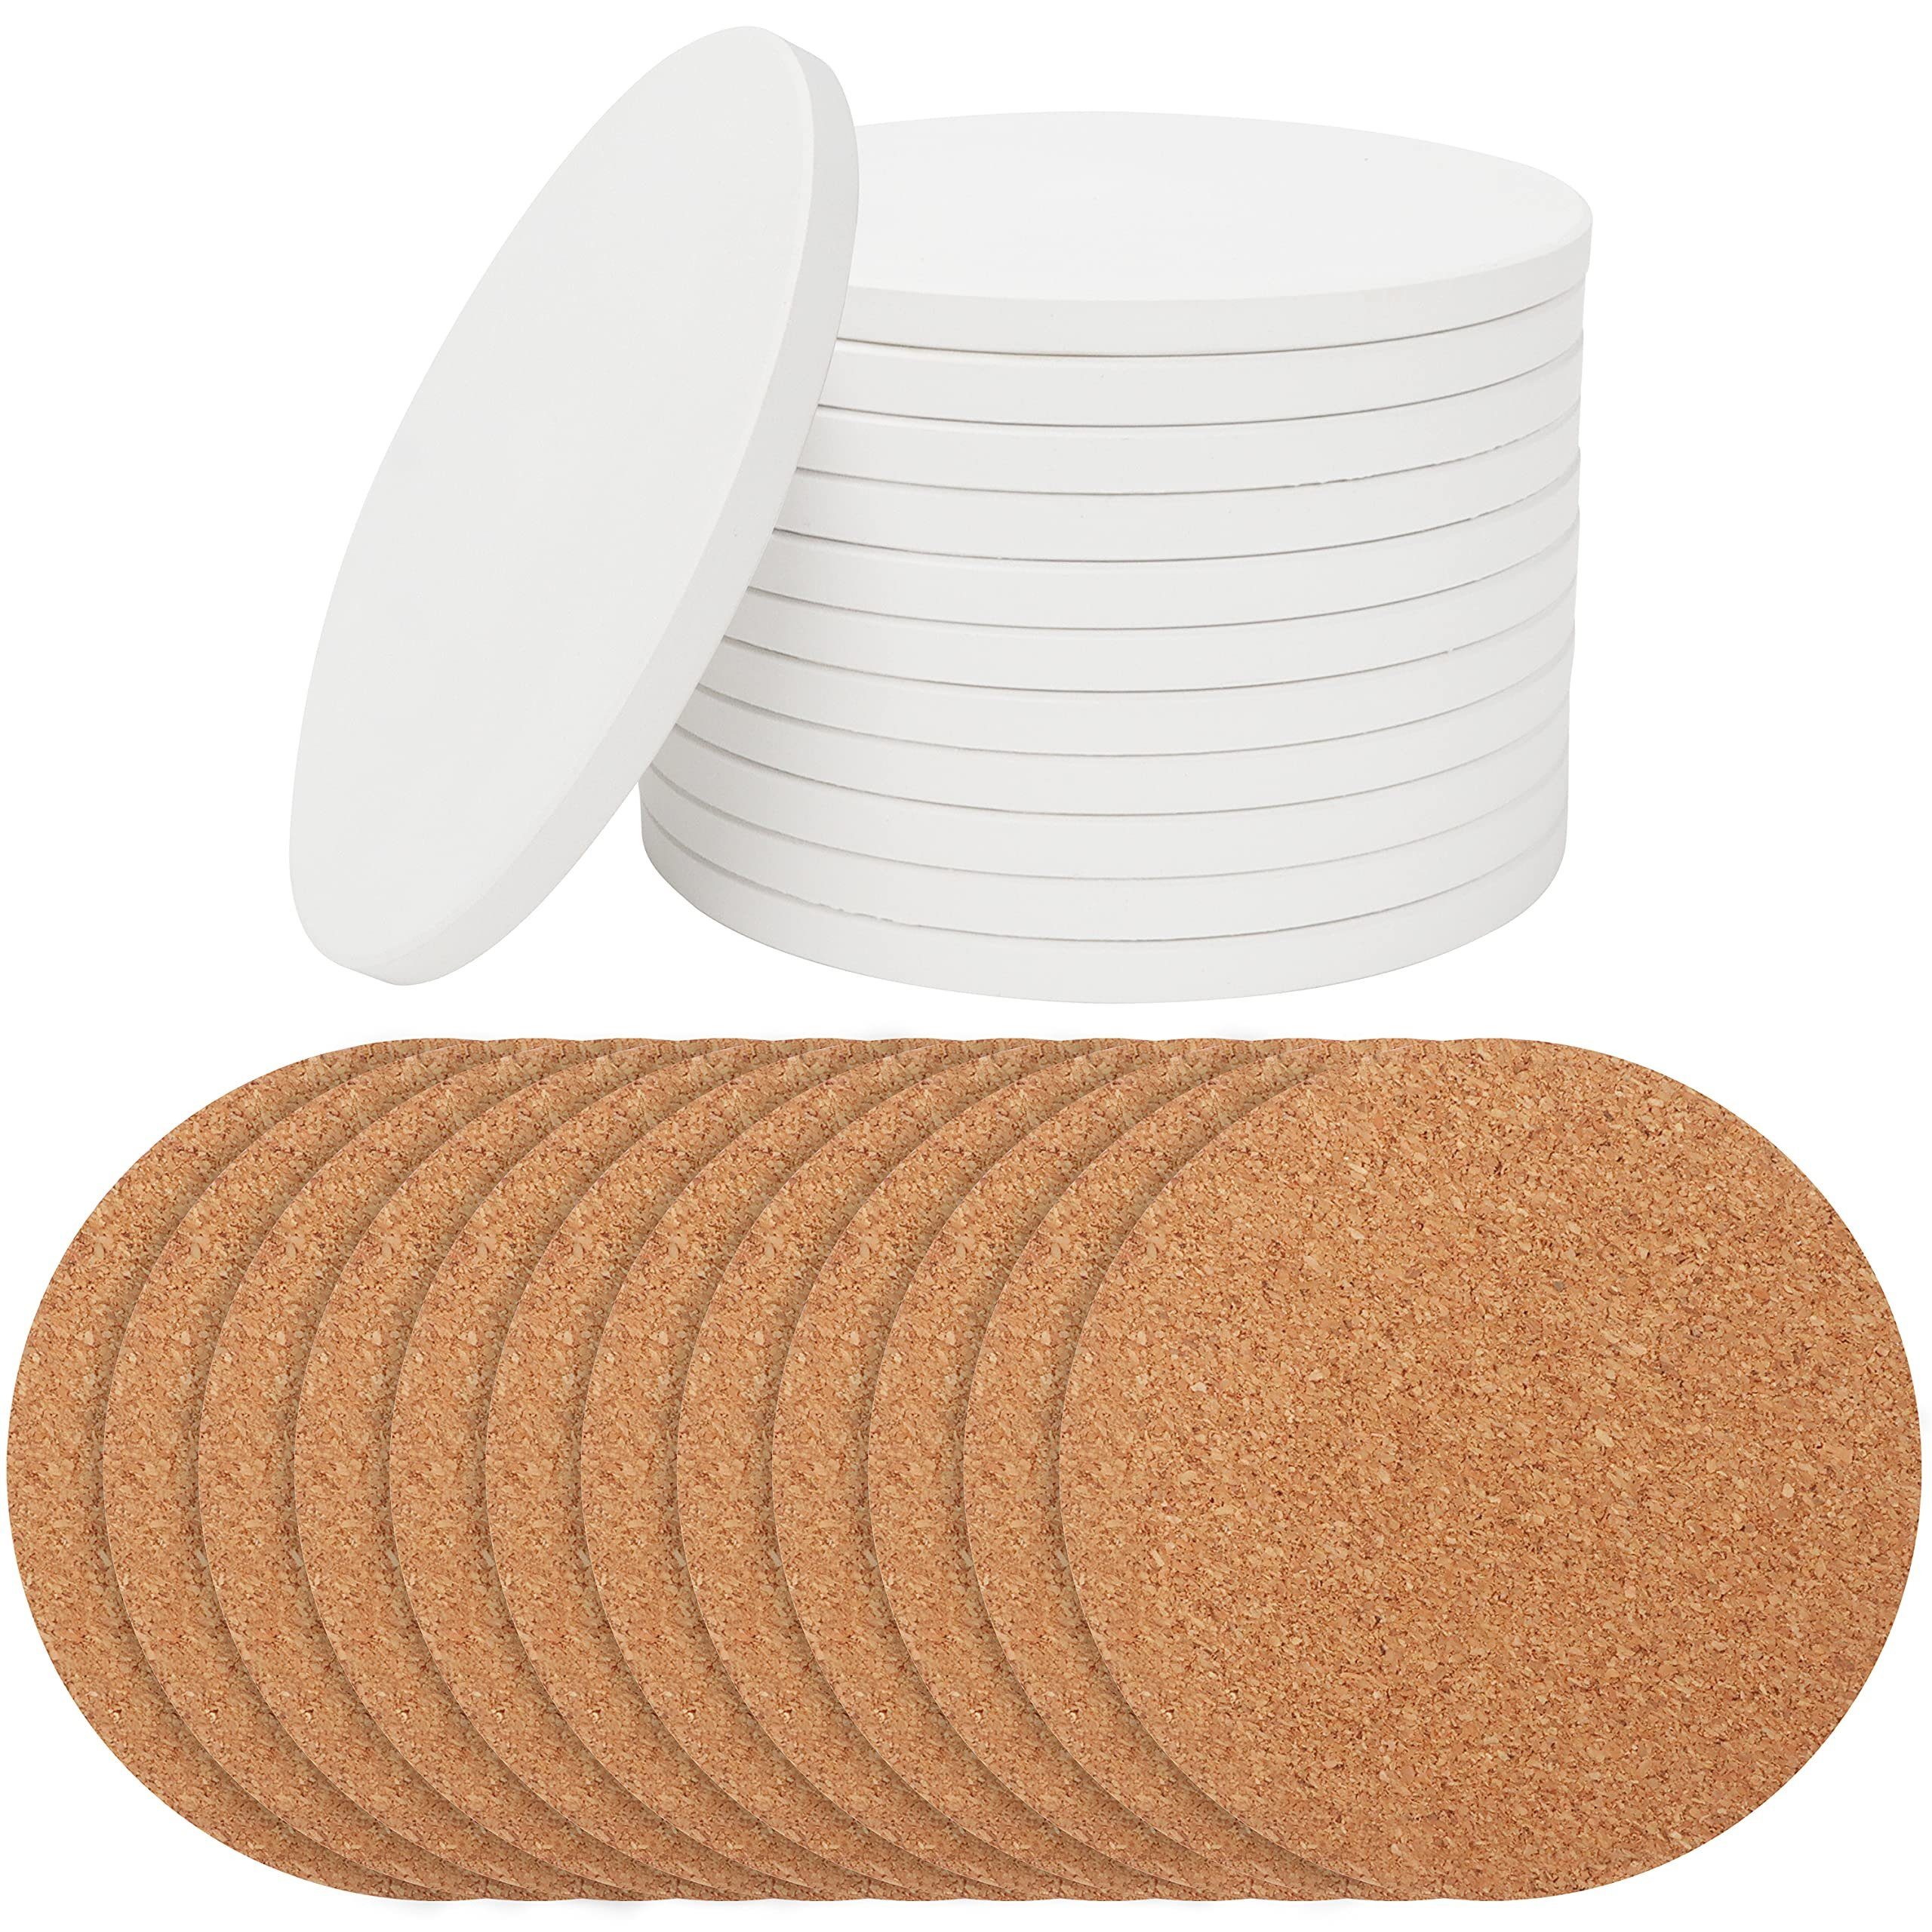 Belle Vous Getränkeuntersetzer Weiße Keramik Untersetzer (12 Stück) - 10,2 cm, 1-tlg., White Ceramic Coasters (12 pcs) - 10.2cm